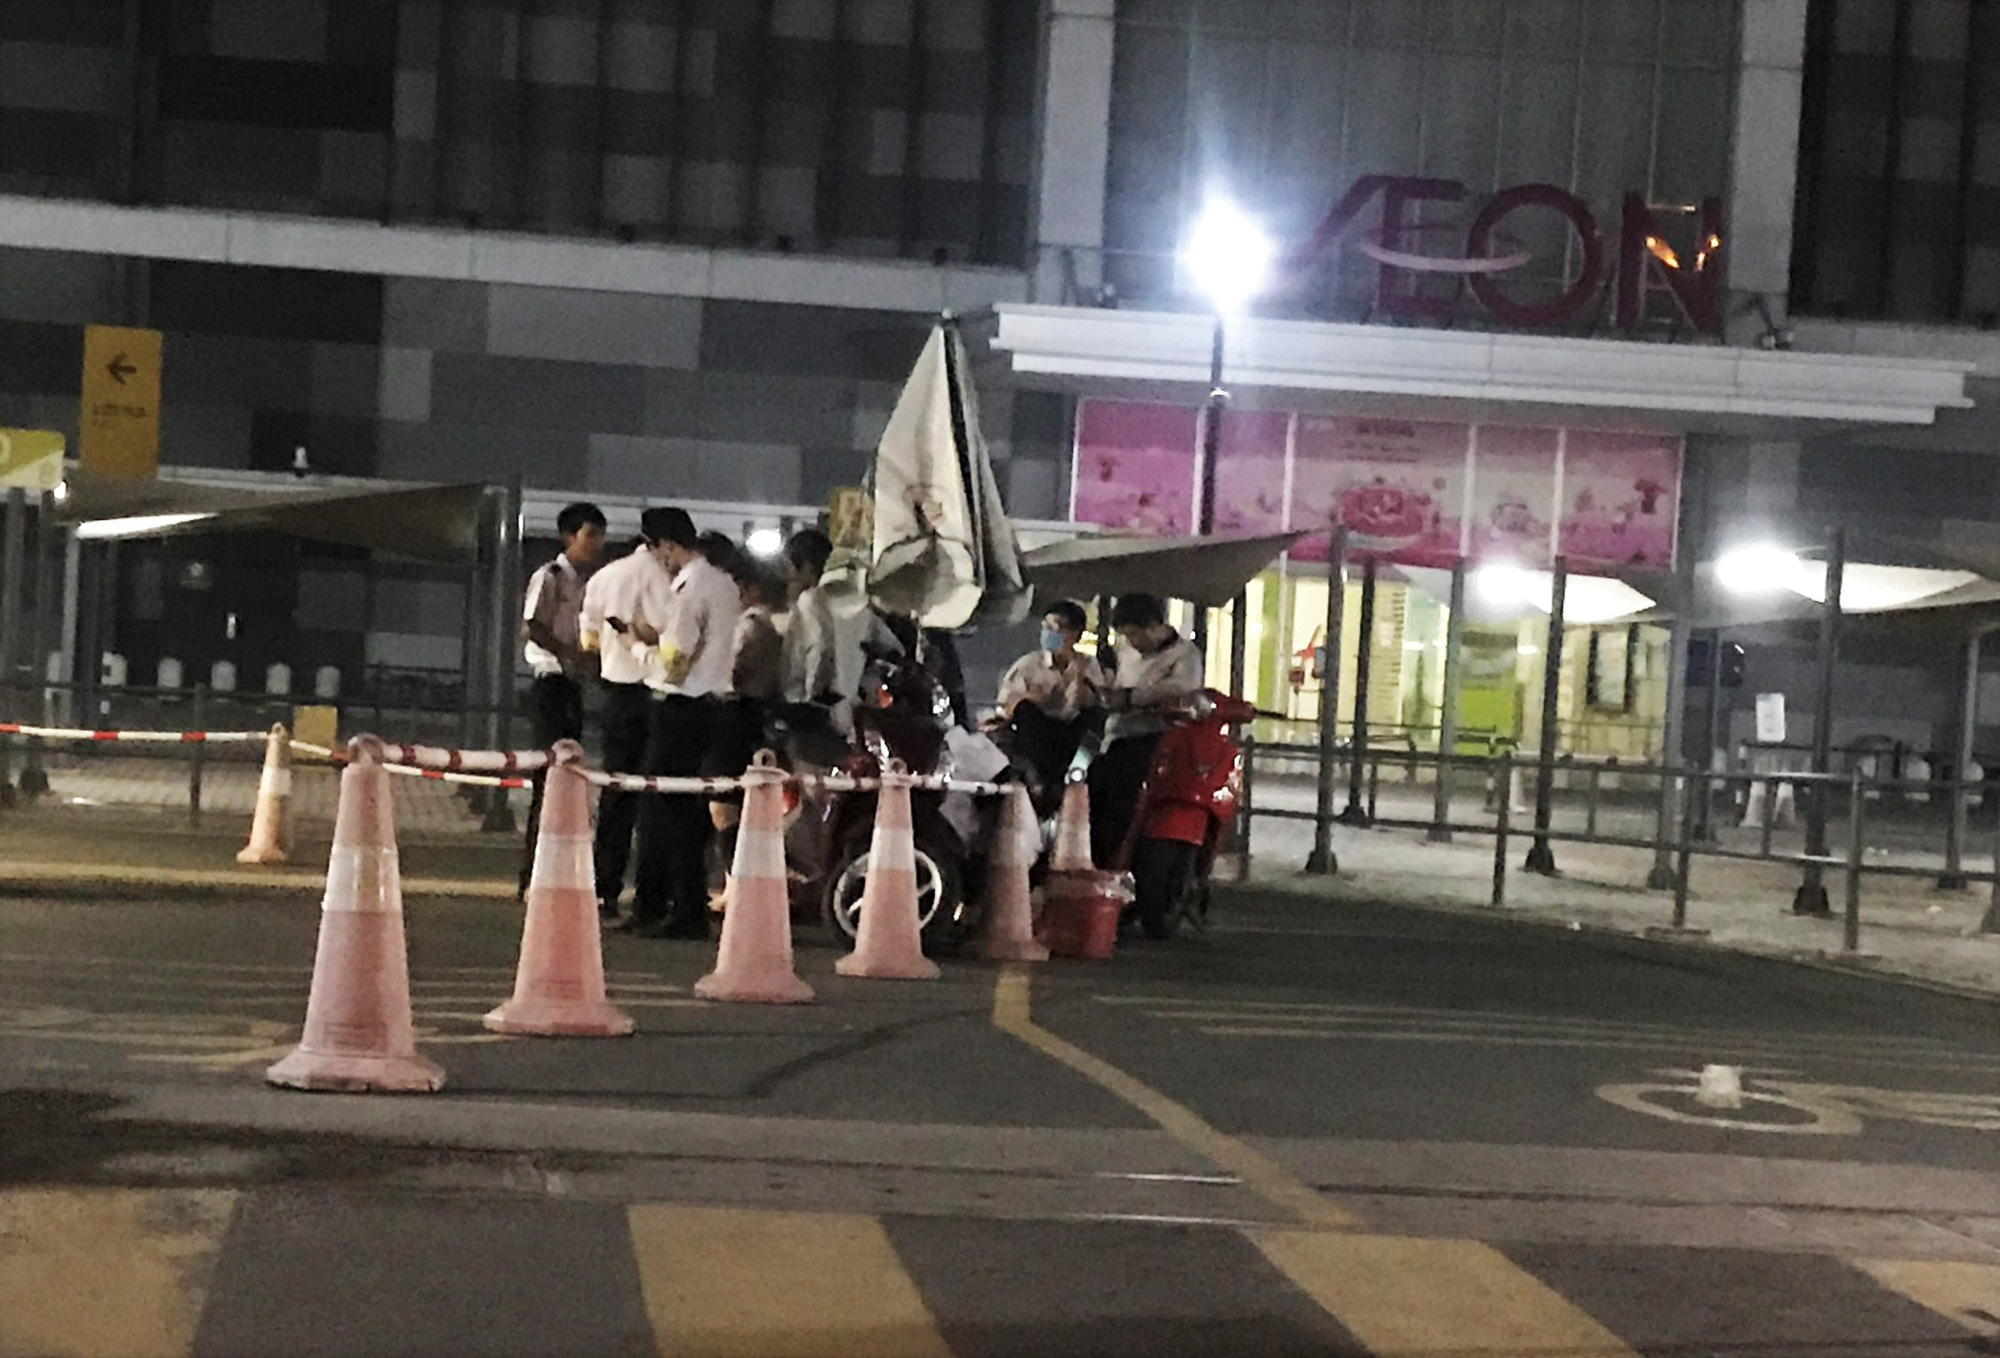 Nguyên nhân vụ ẩu đả giữa bảo vệ và nhóm người tại Aeon MALL Tân Phú, TP.HCM - Ảnh 1.